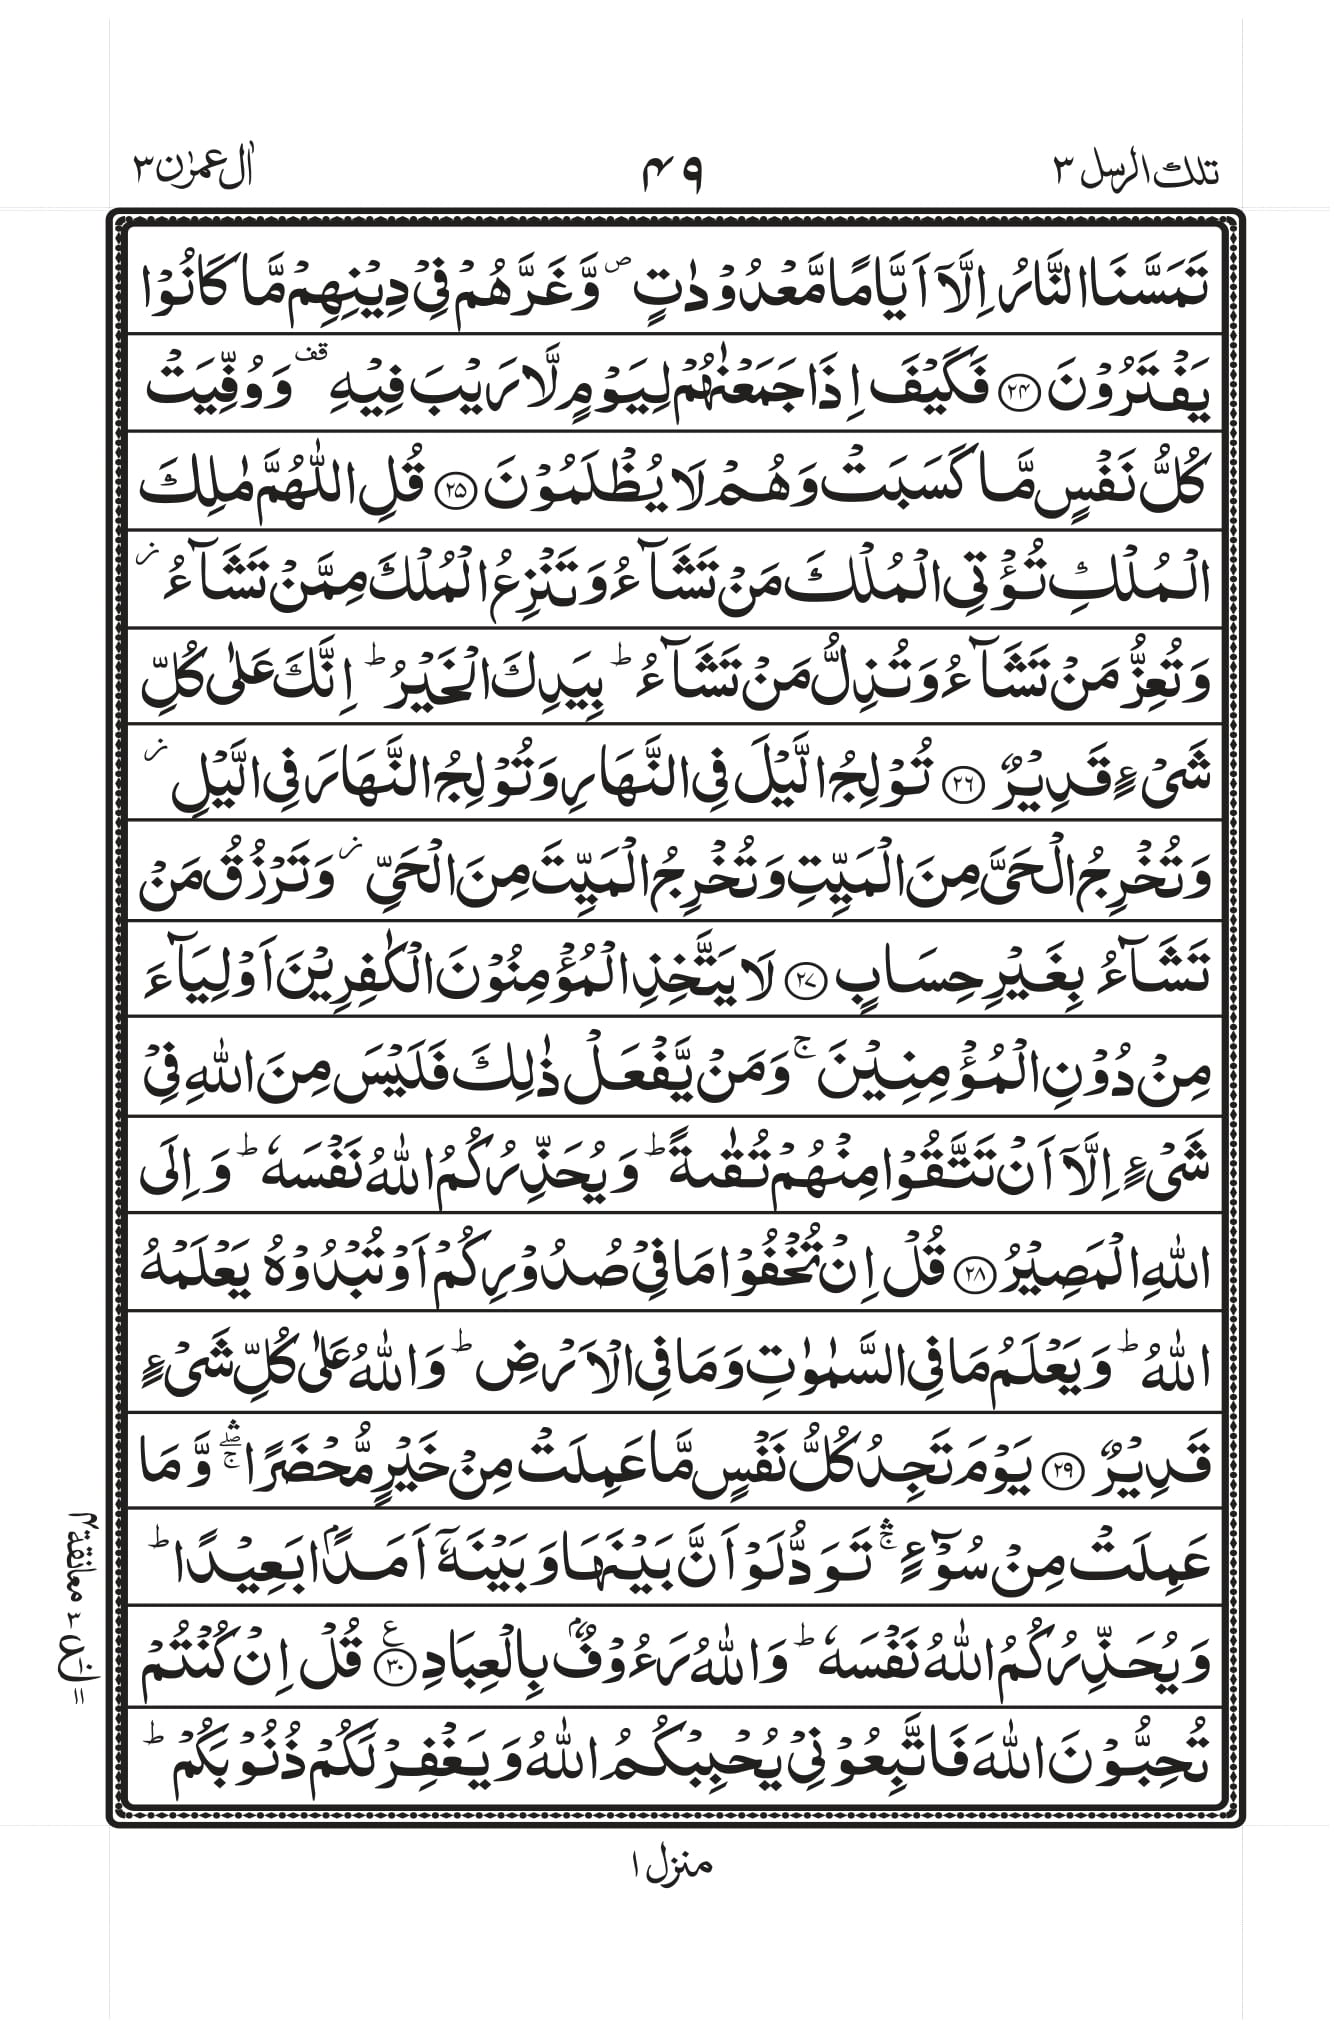 Surah Al Imran Ayat 190 200 Pdf 80 Ayat Dgn Terjemah Pdf Document Photos